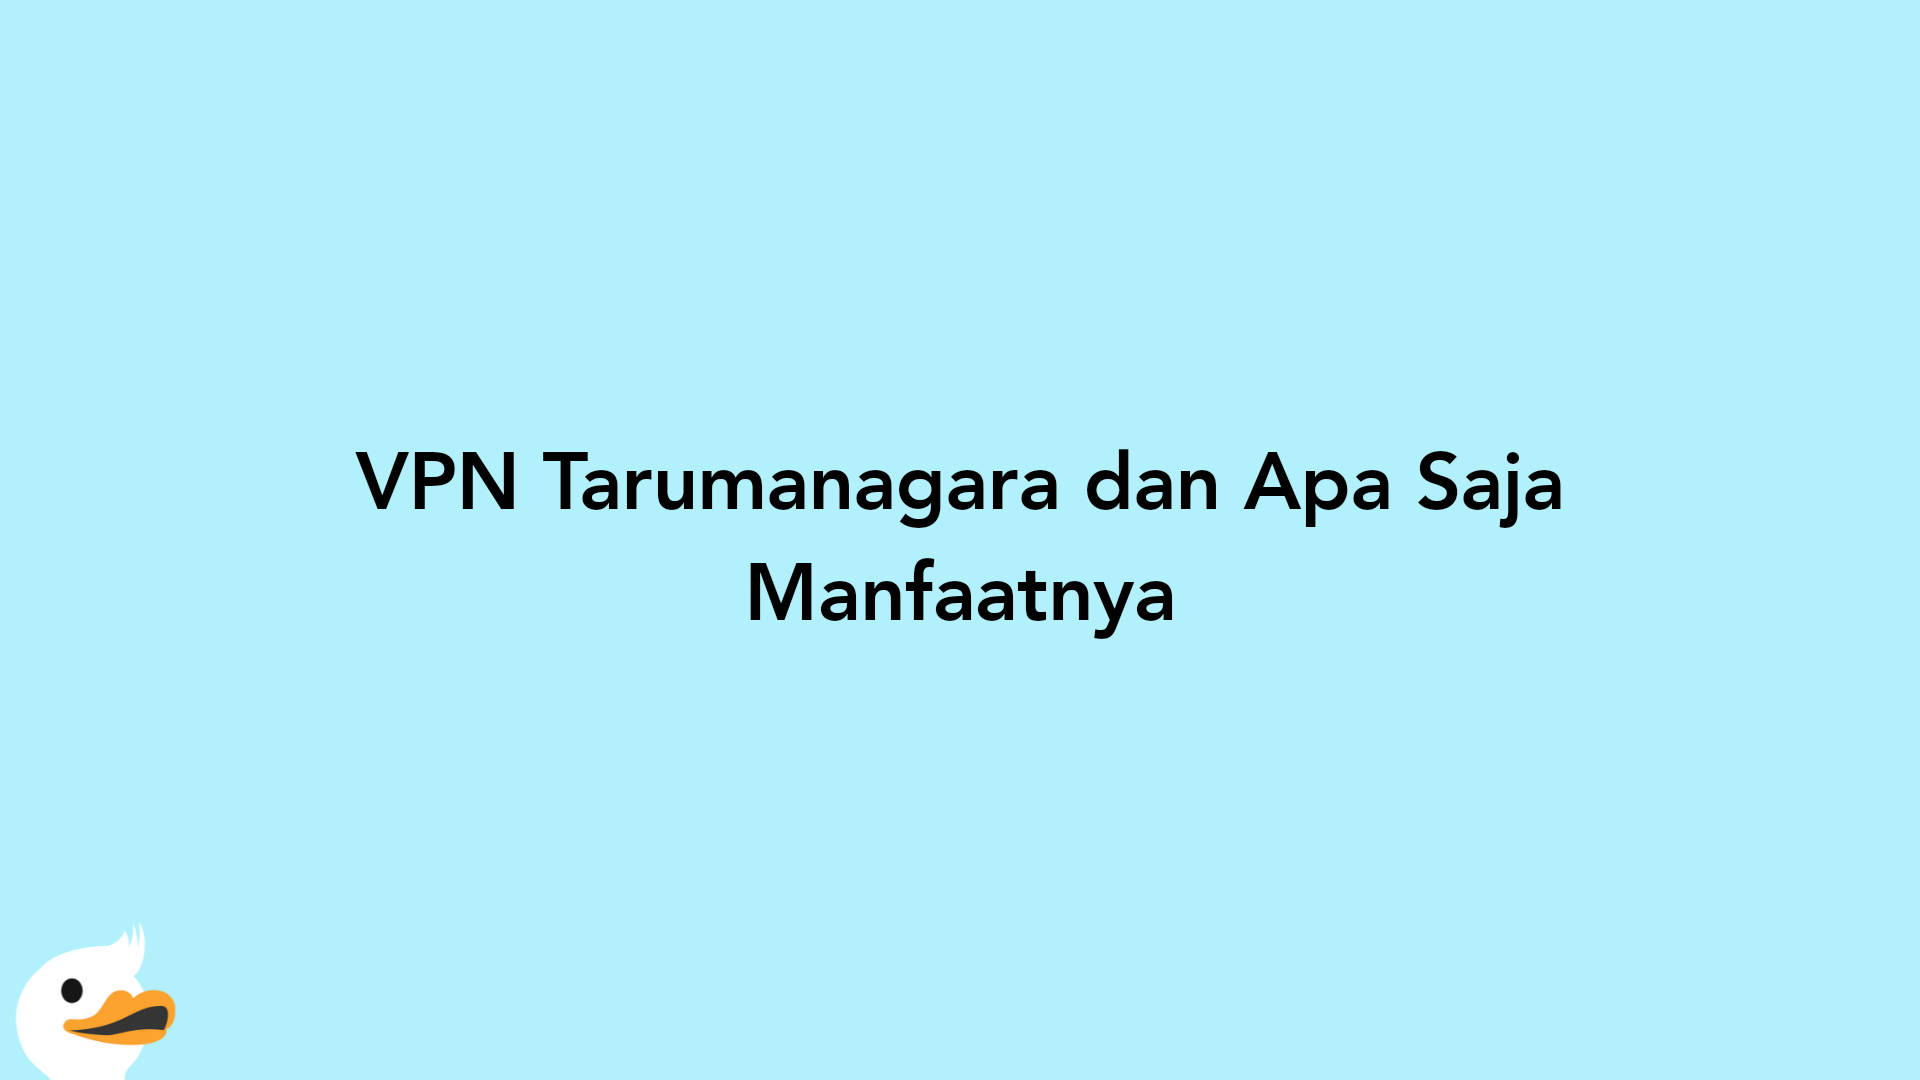 VPN Tarumanagara dan Apa Saja Manfaatnya